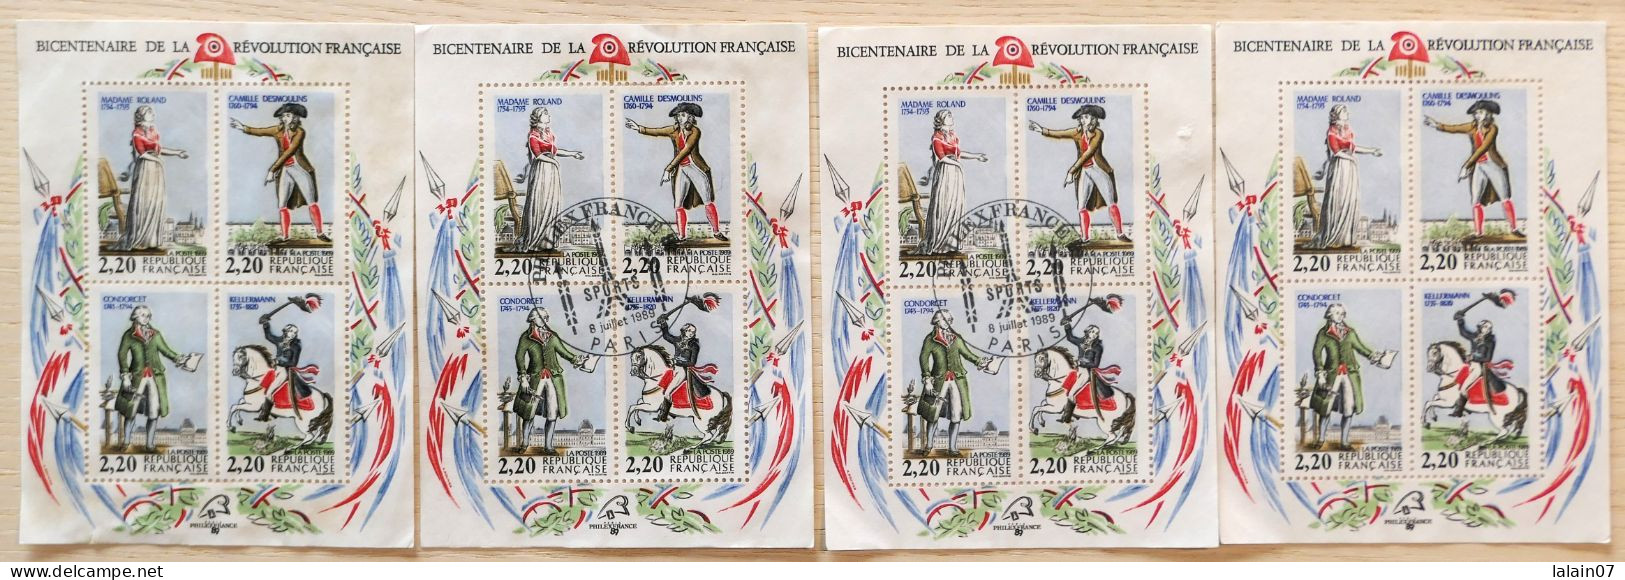 4 Blocs Feuillets émis Pour Le Bicentenaire De La Révolution Française, 2 Neufs Et 2 Oblitérés Le 8 Juillet 1989 à Paris - 1980-1989